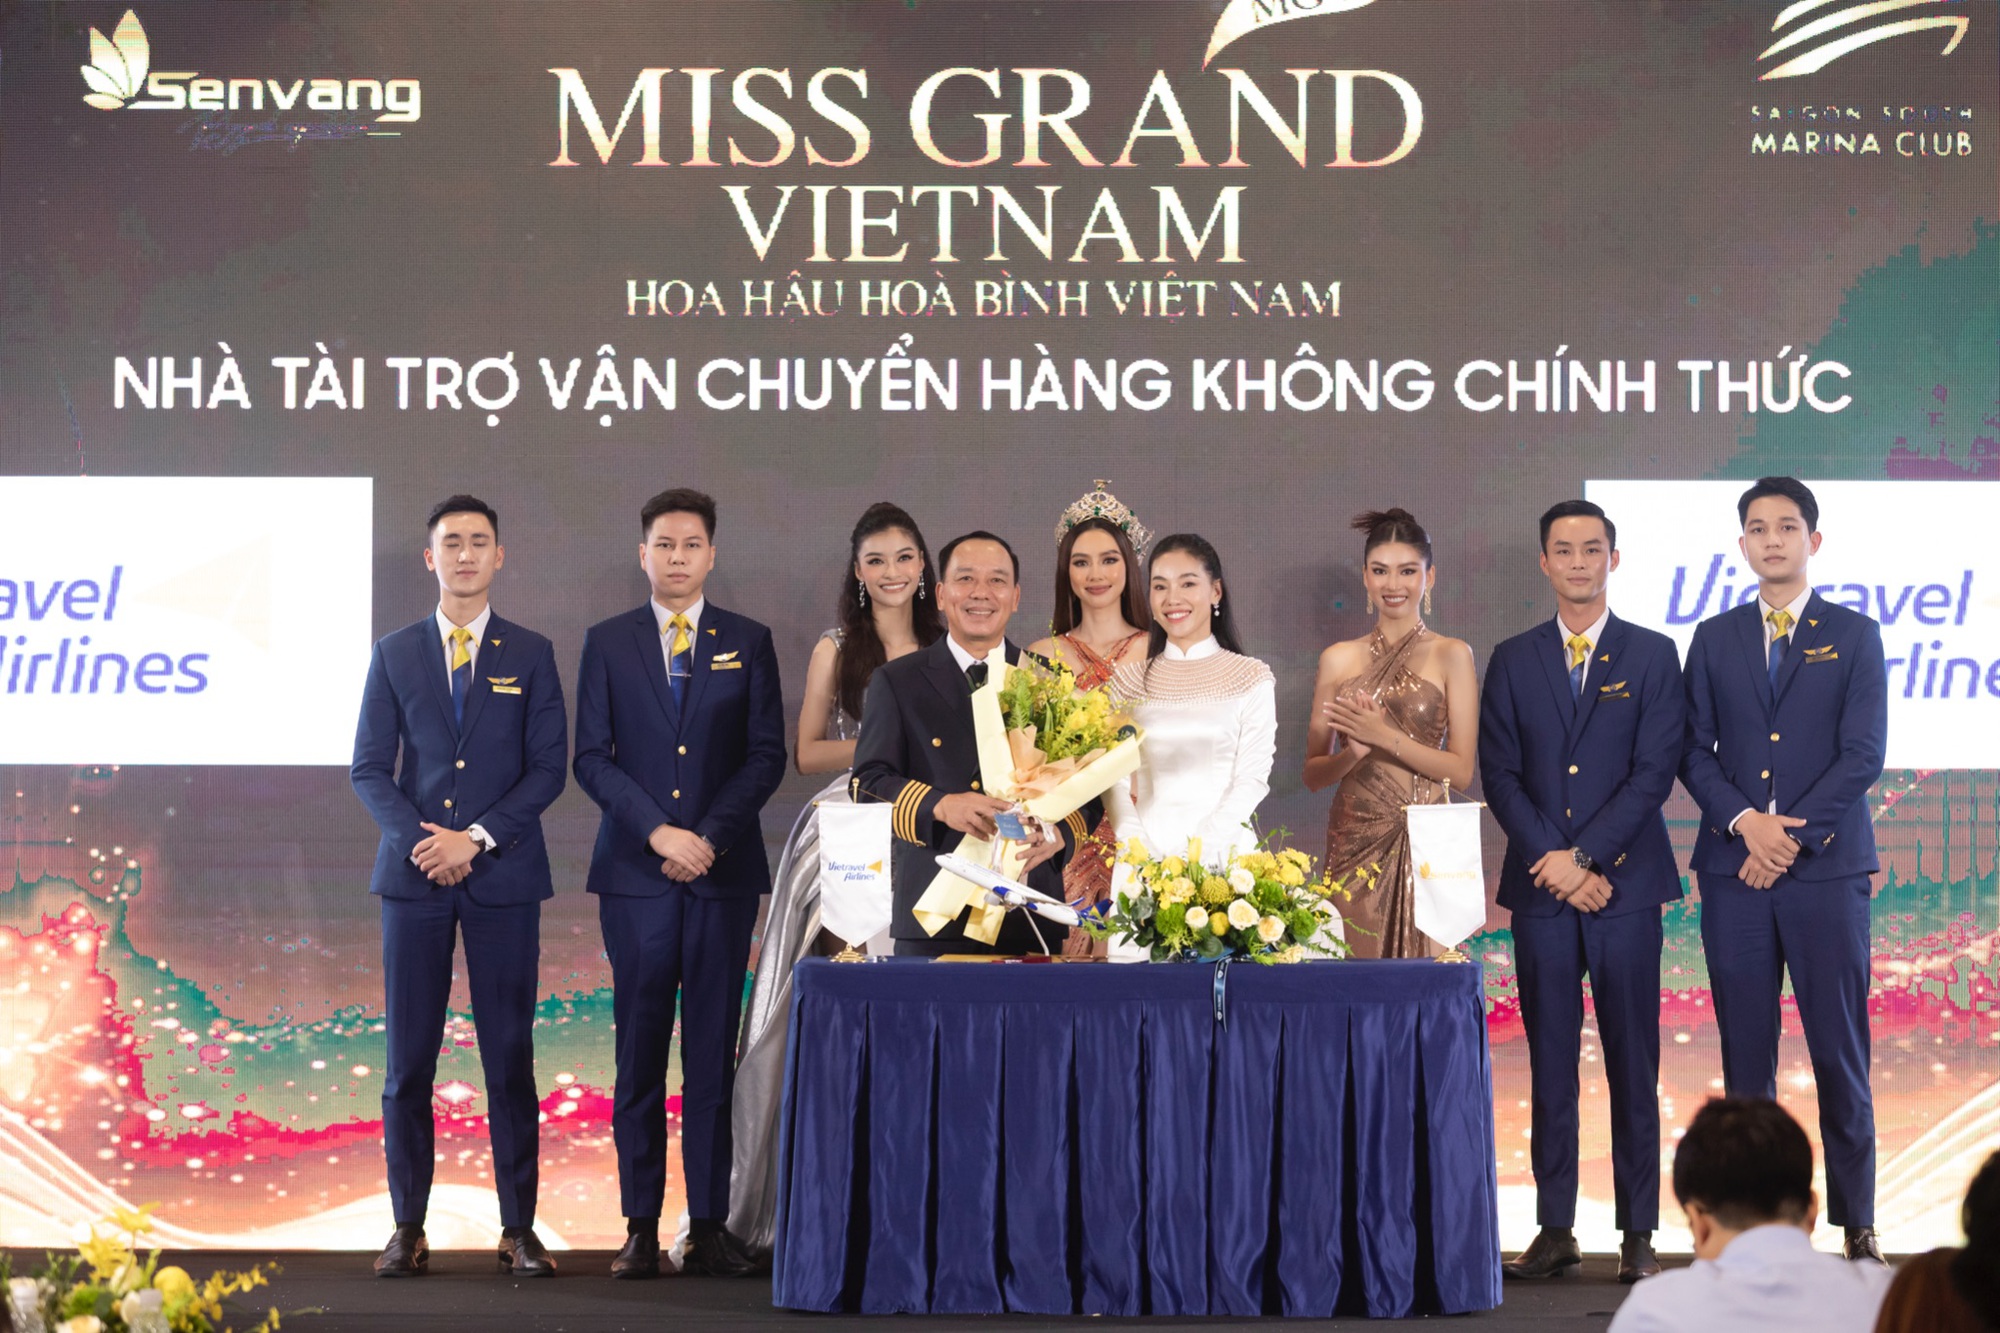 Vietravel Airlines - Đơn vị vận chuyển hàng không chính thức Miss Grand Vietnam 2022-1